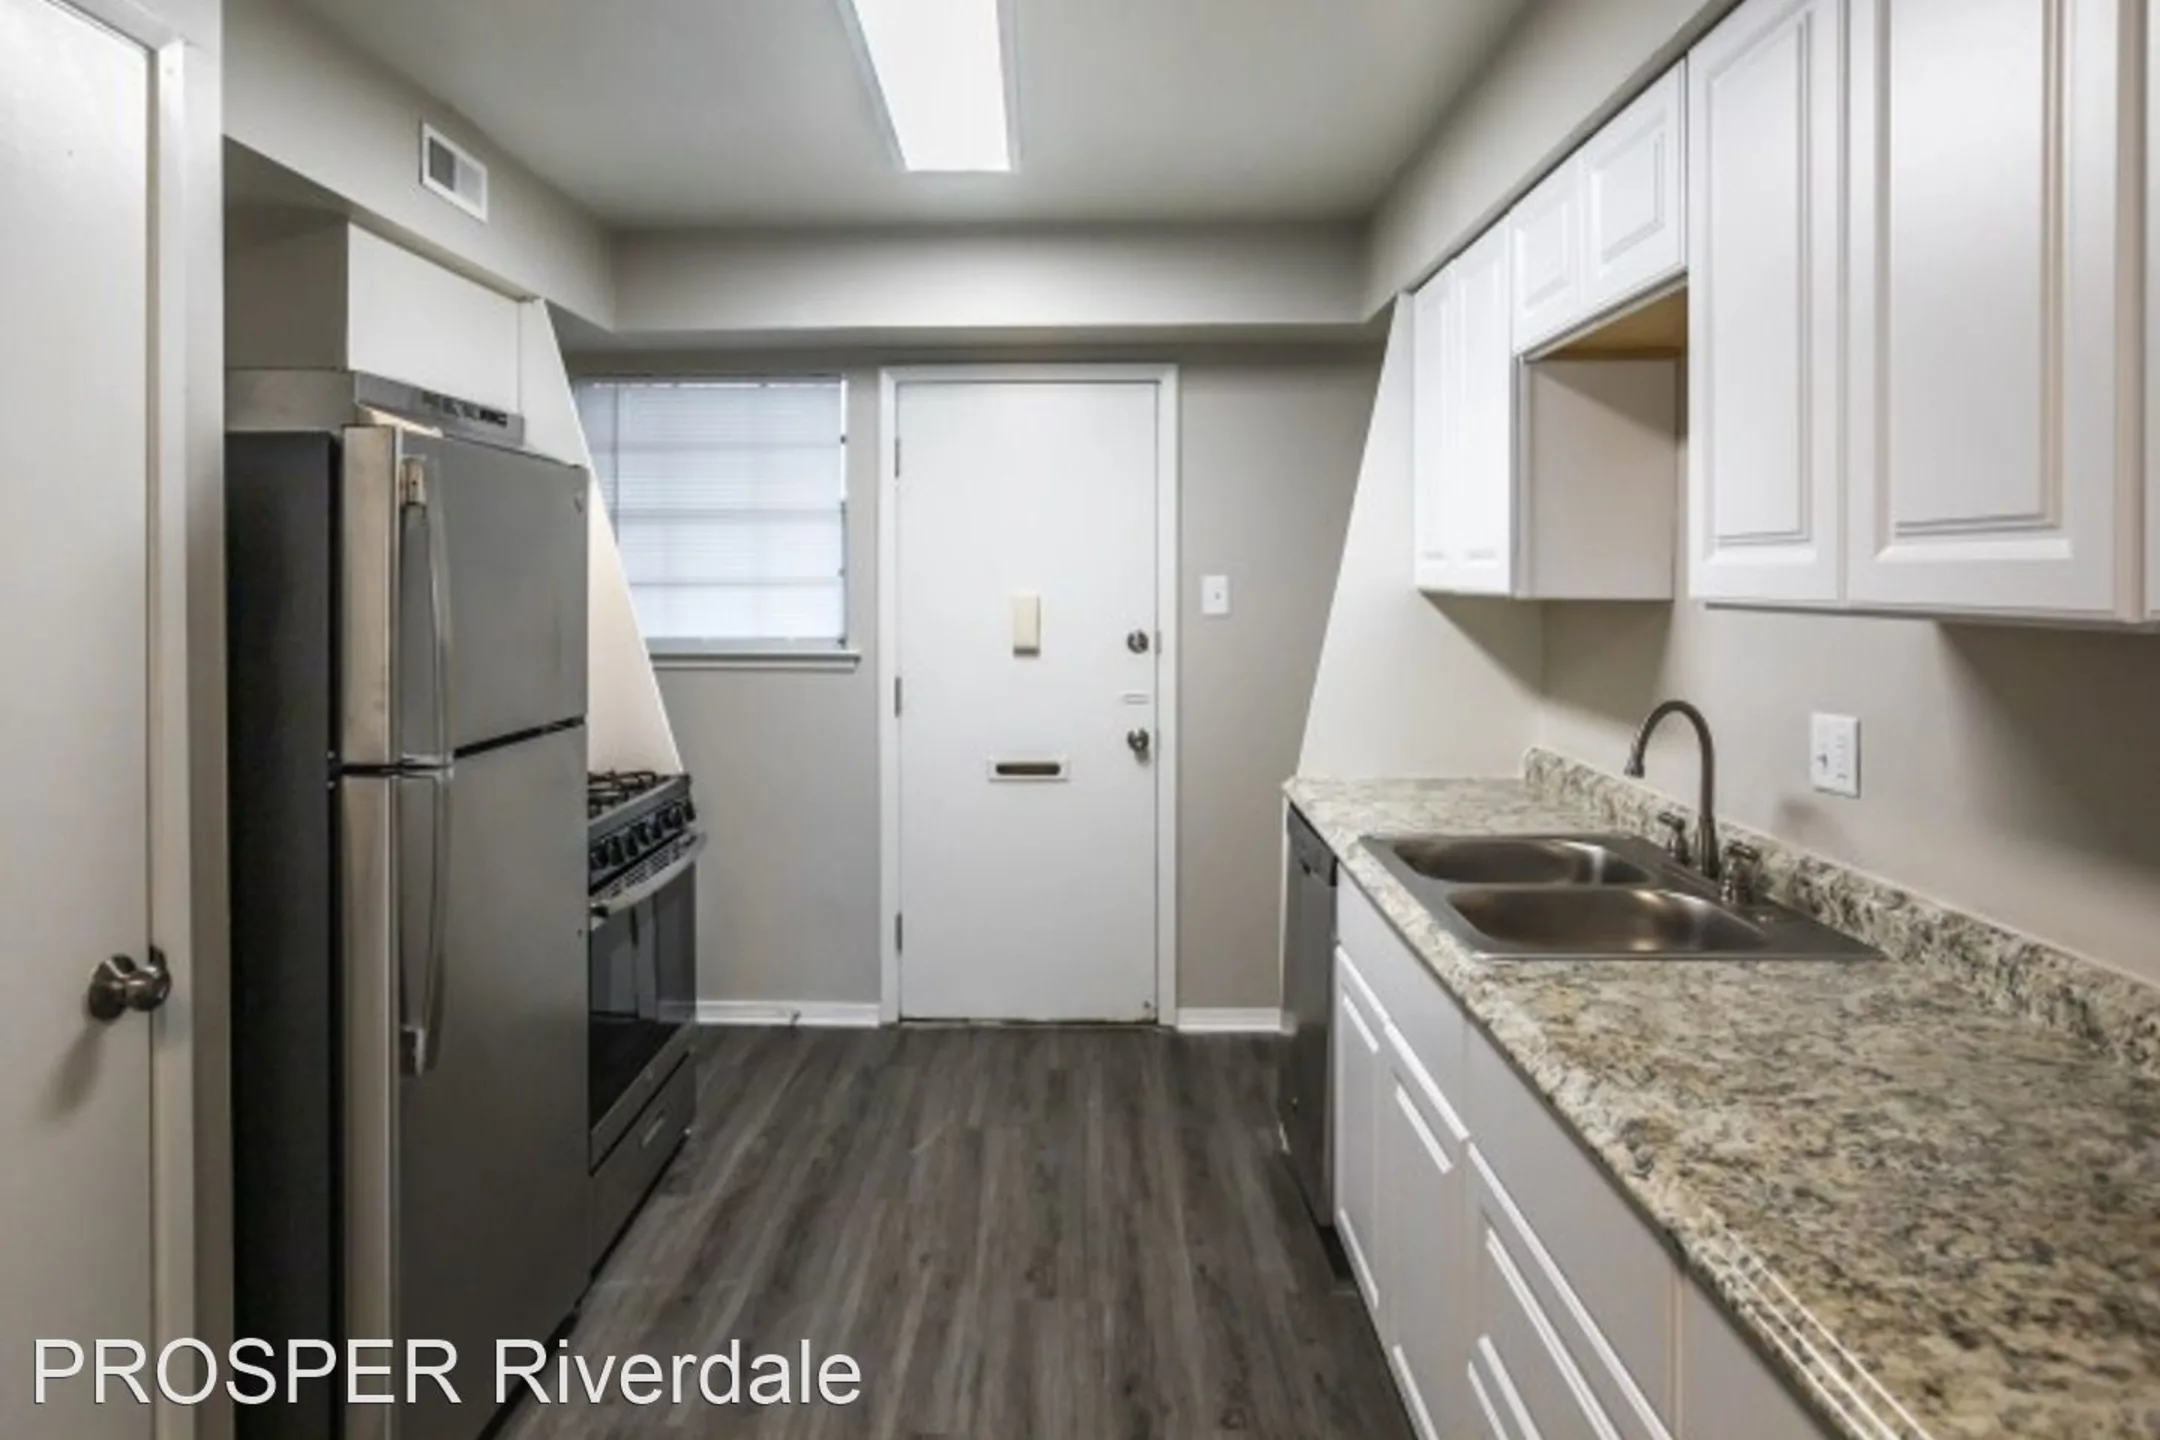 Kitchen - PROSPER Riverdale - Little Rock, AR